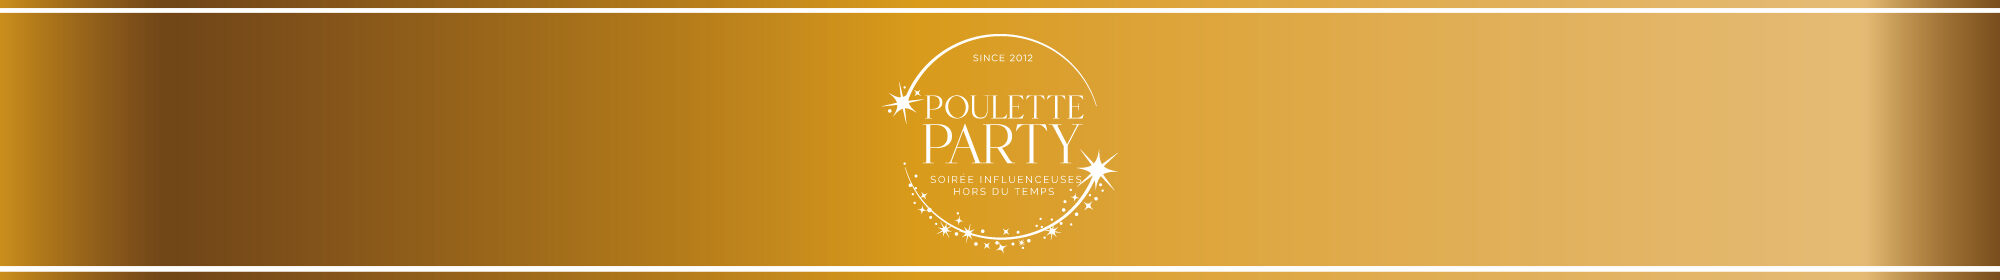 Poulette Party